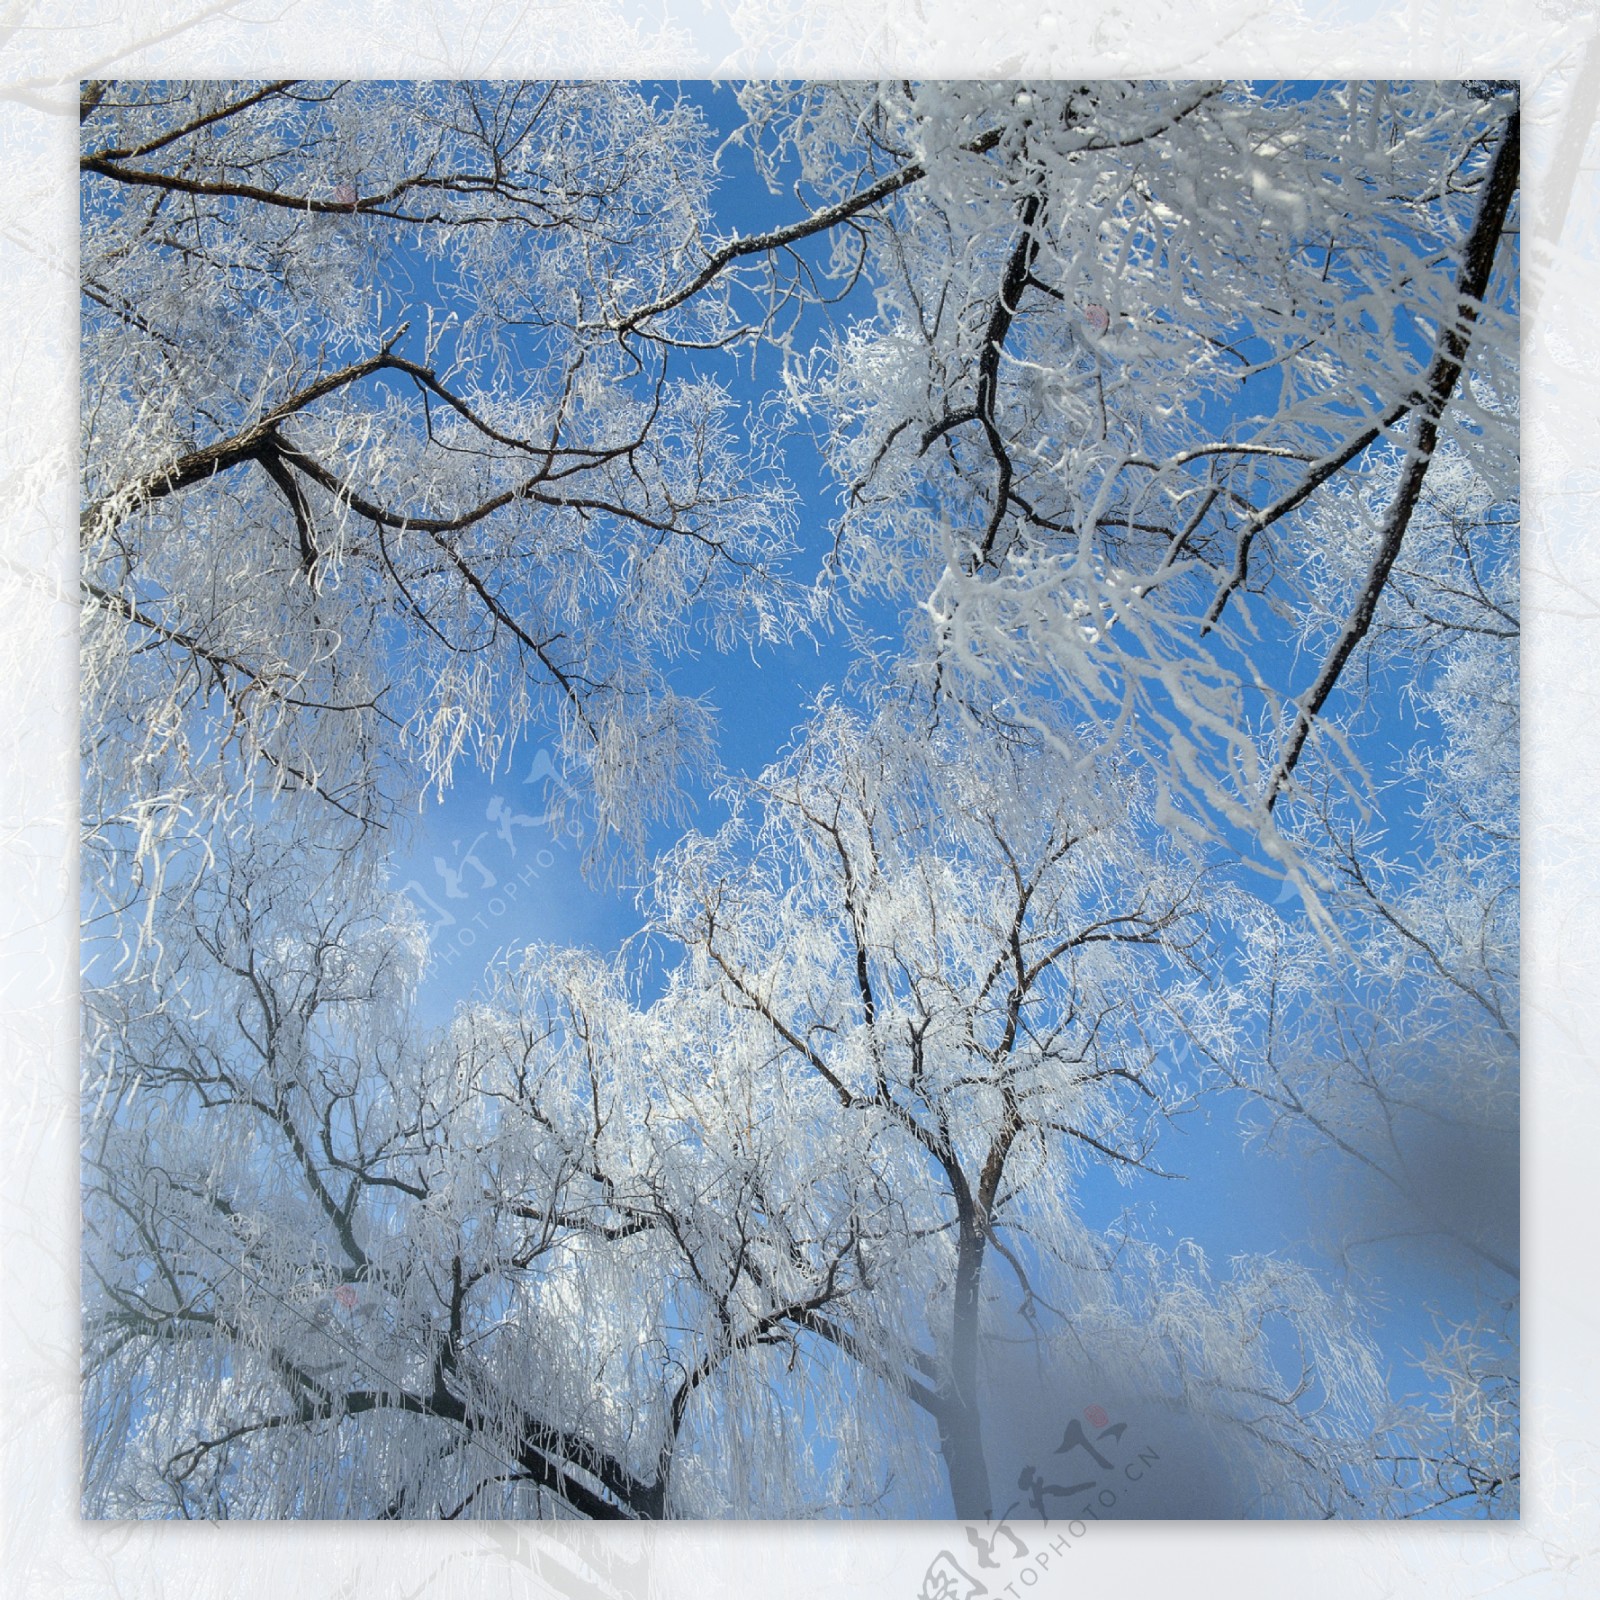 树木上的冰花摄影图片